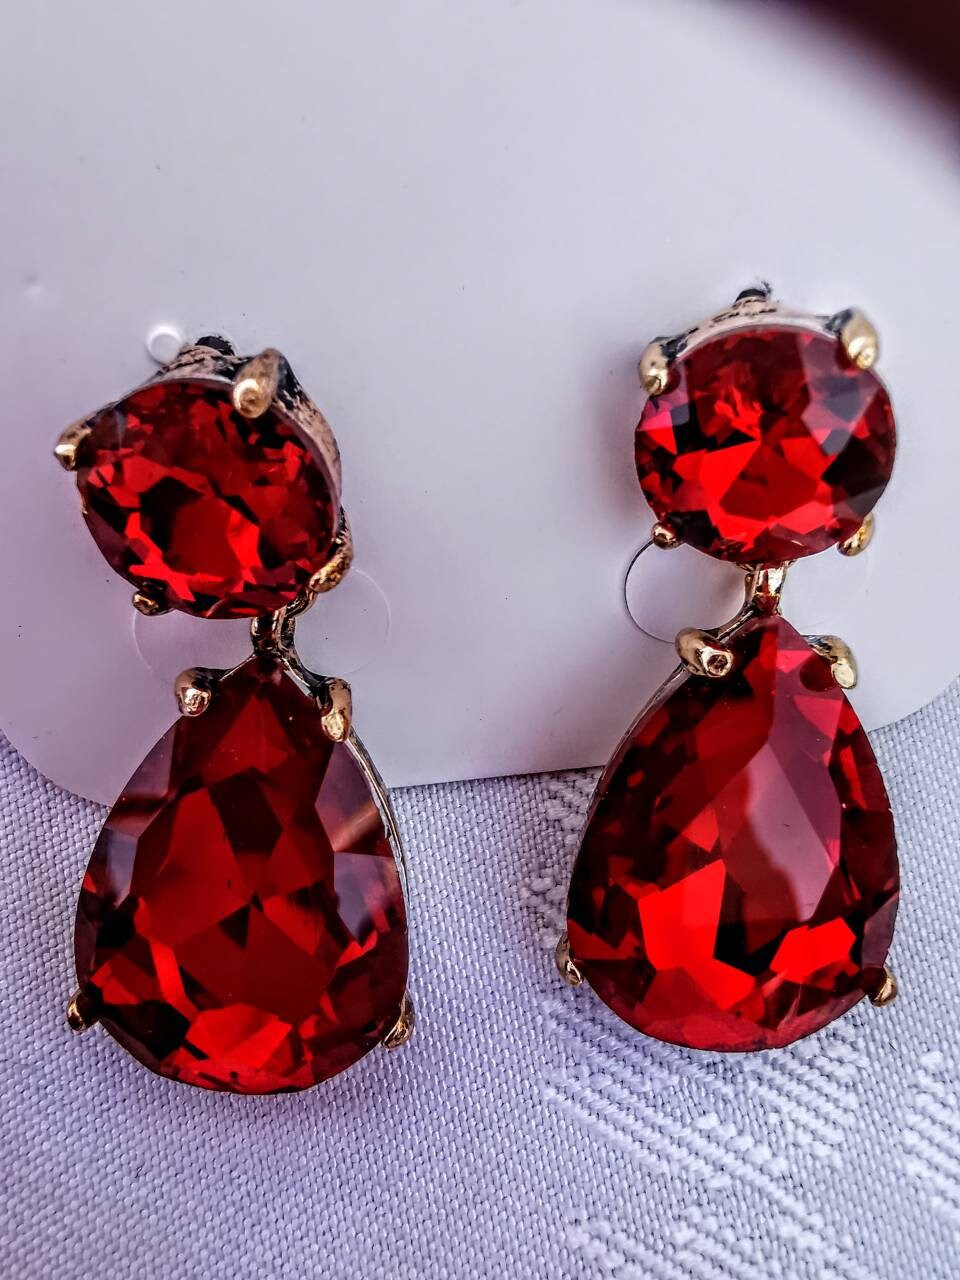 Swarovski Crystal earrings Anna Wintour Earrings Georgian | Etsy